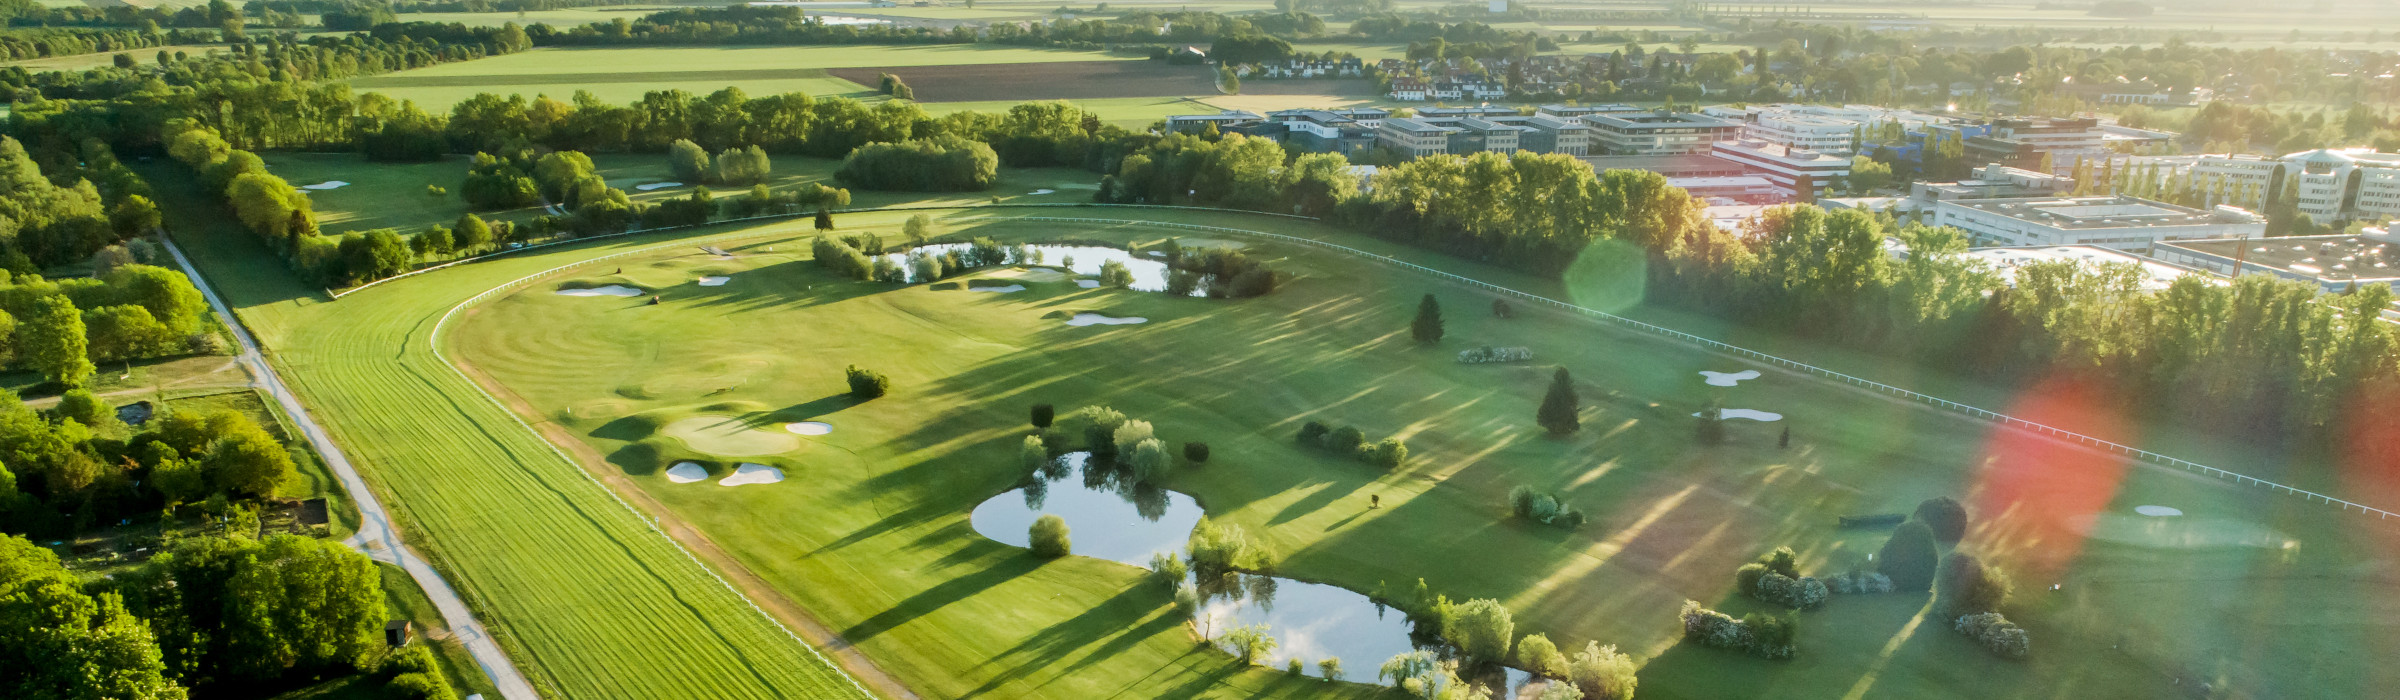 Turniere im Golfclub München-Riem